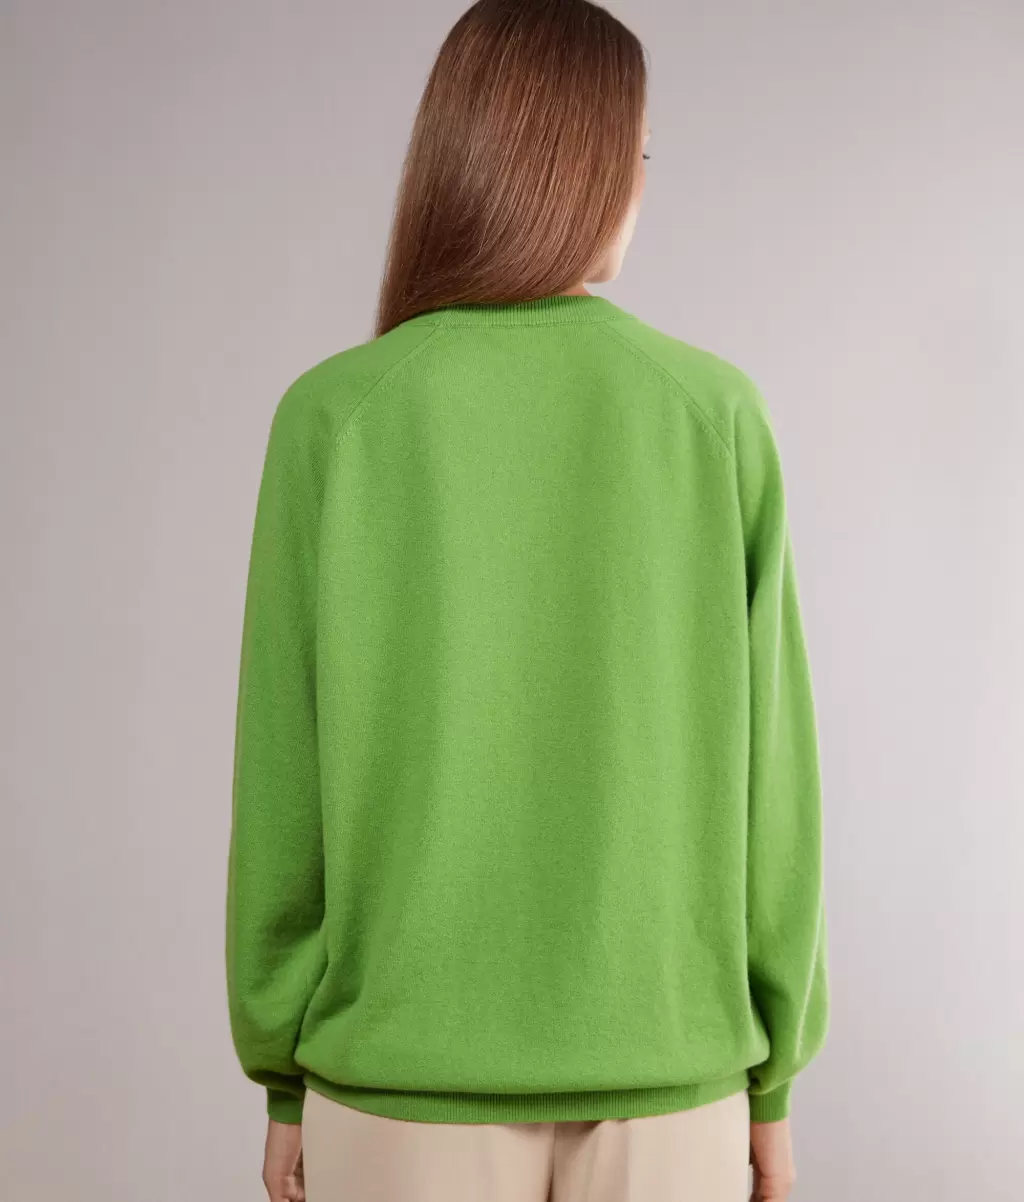 Falconeri Swetry Z Okrągłym Dekoltem Kobieta Bluzka Maxi Z Okągłym Dekoltem Z Kaszmiru Ultrasoft Green - 2